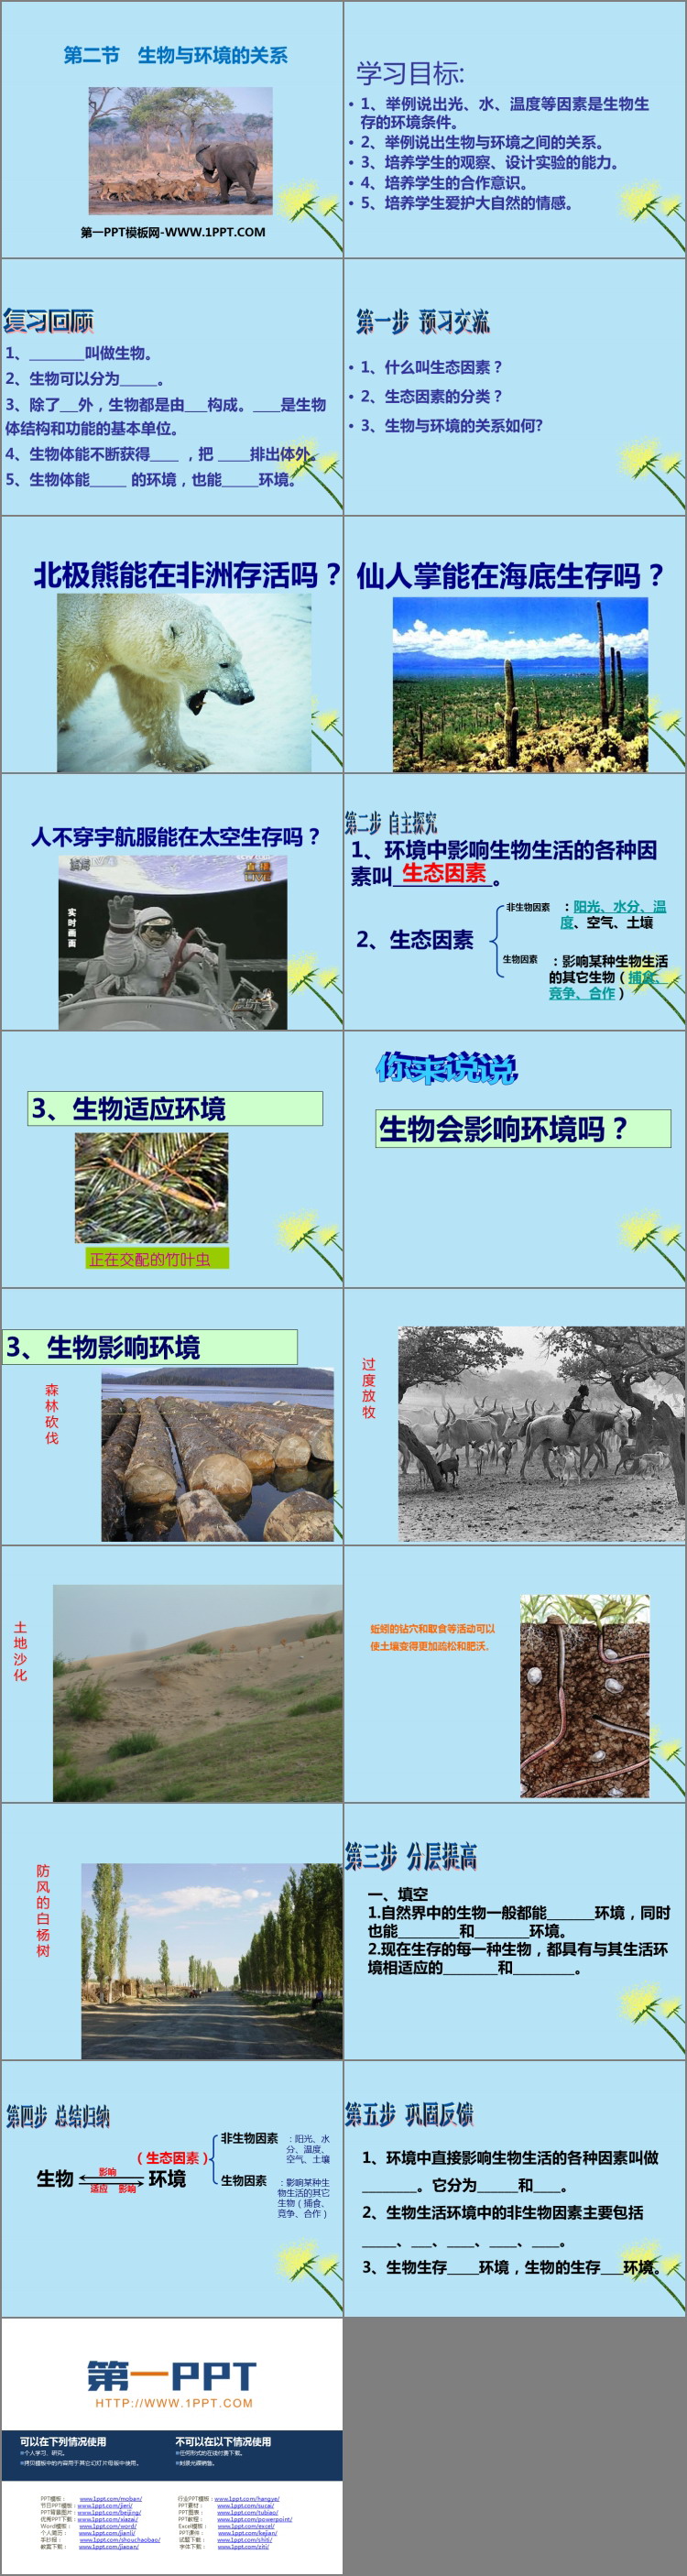 《生物与环境的关系》PPT优质课件下载-预览图02